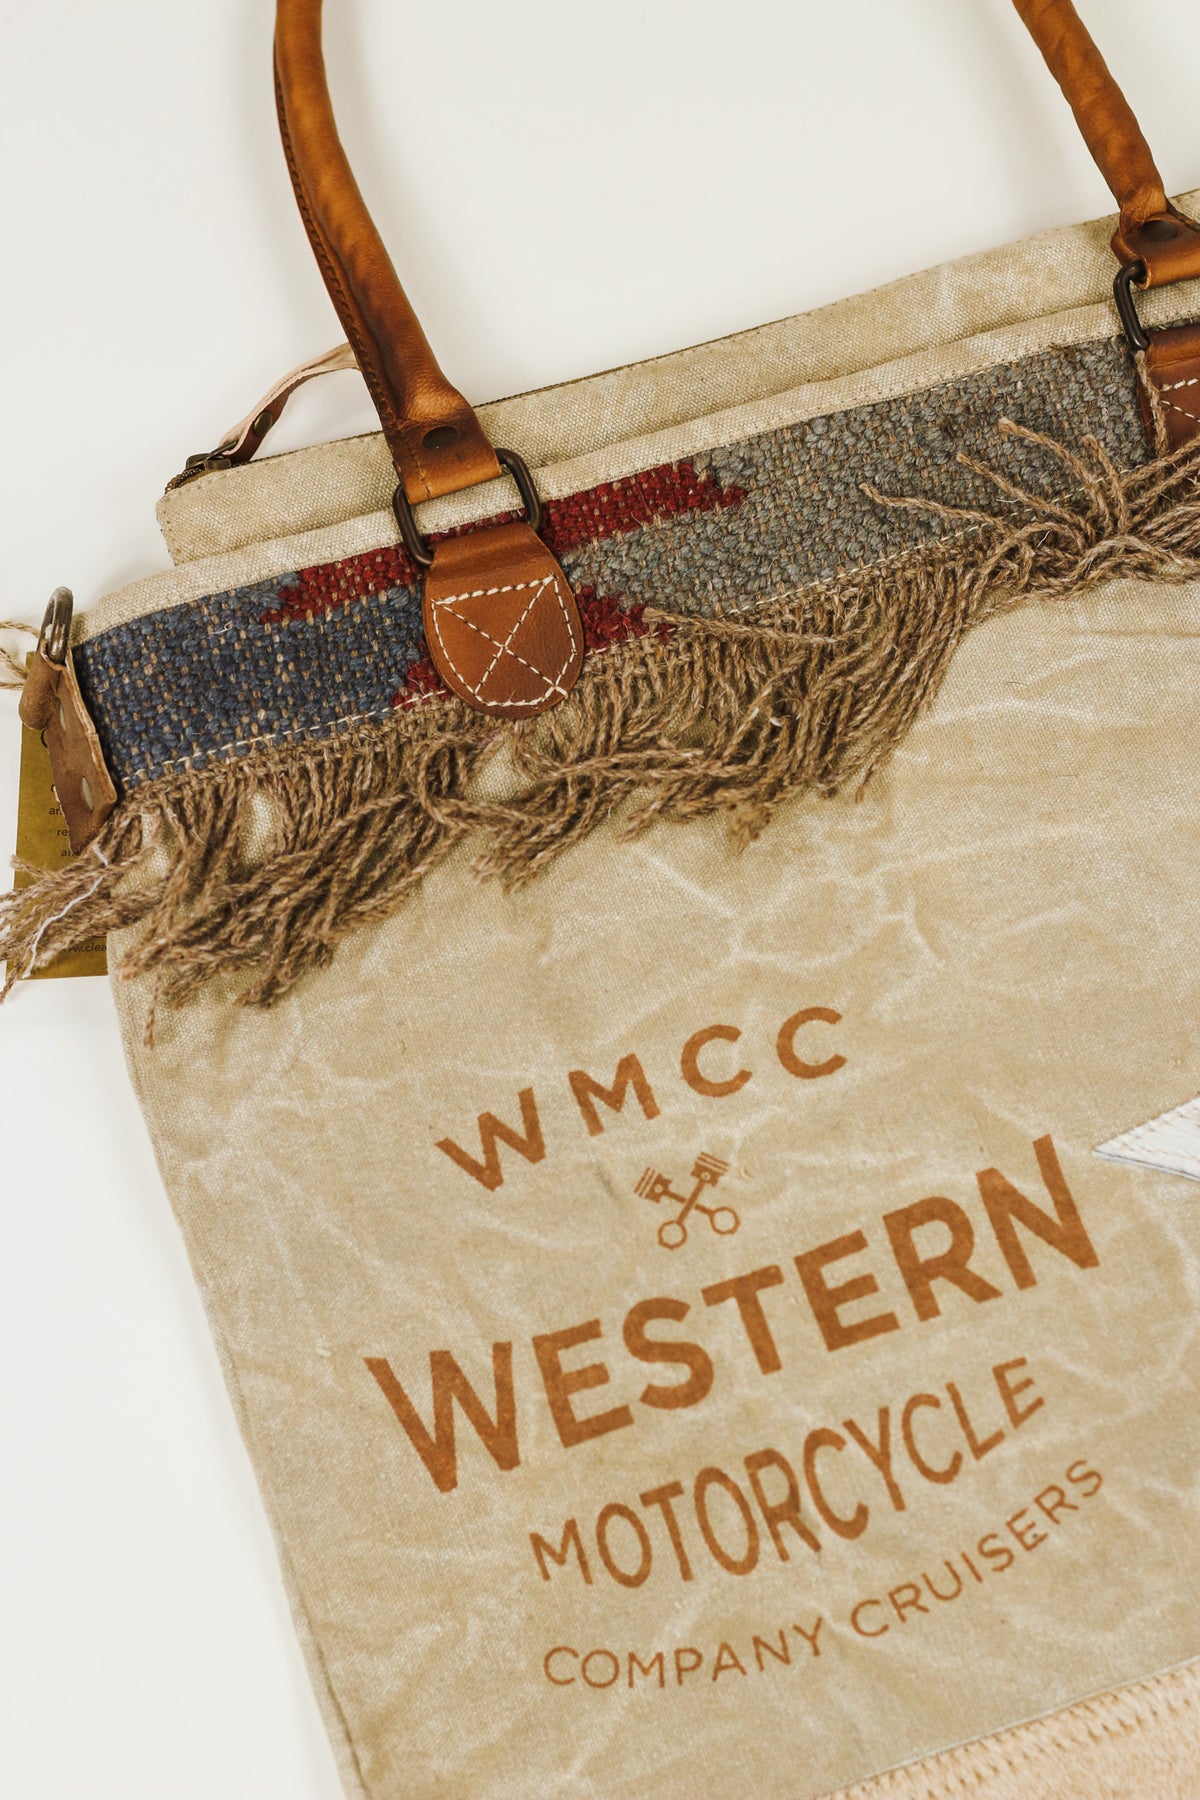 Western Motorcycle Cowhide Star Bag